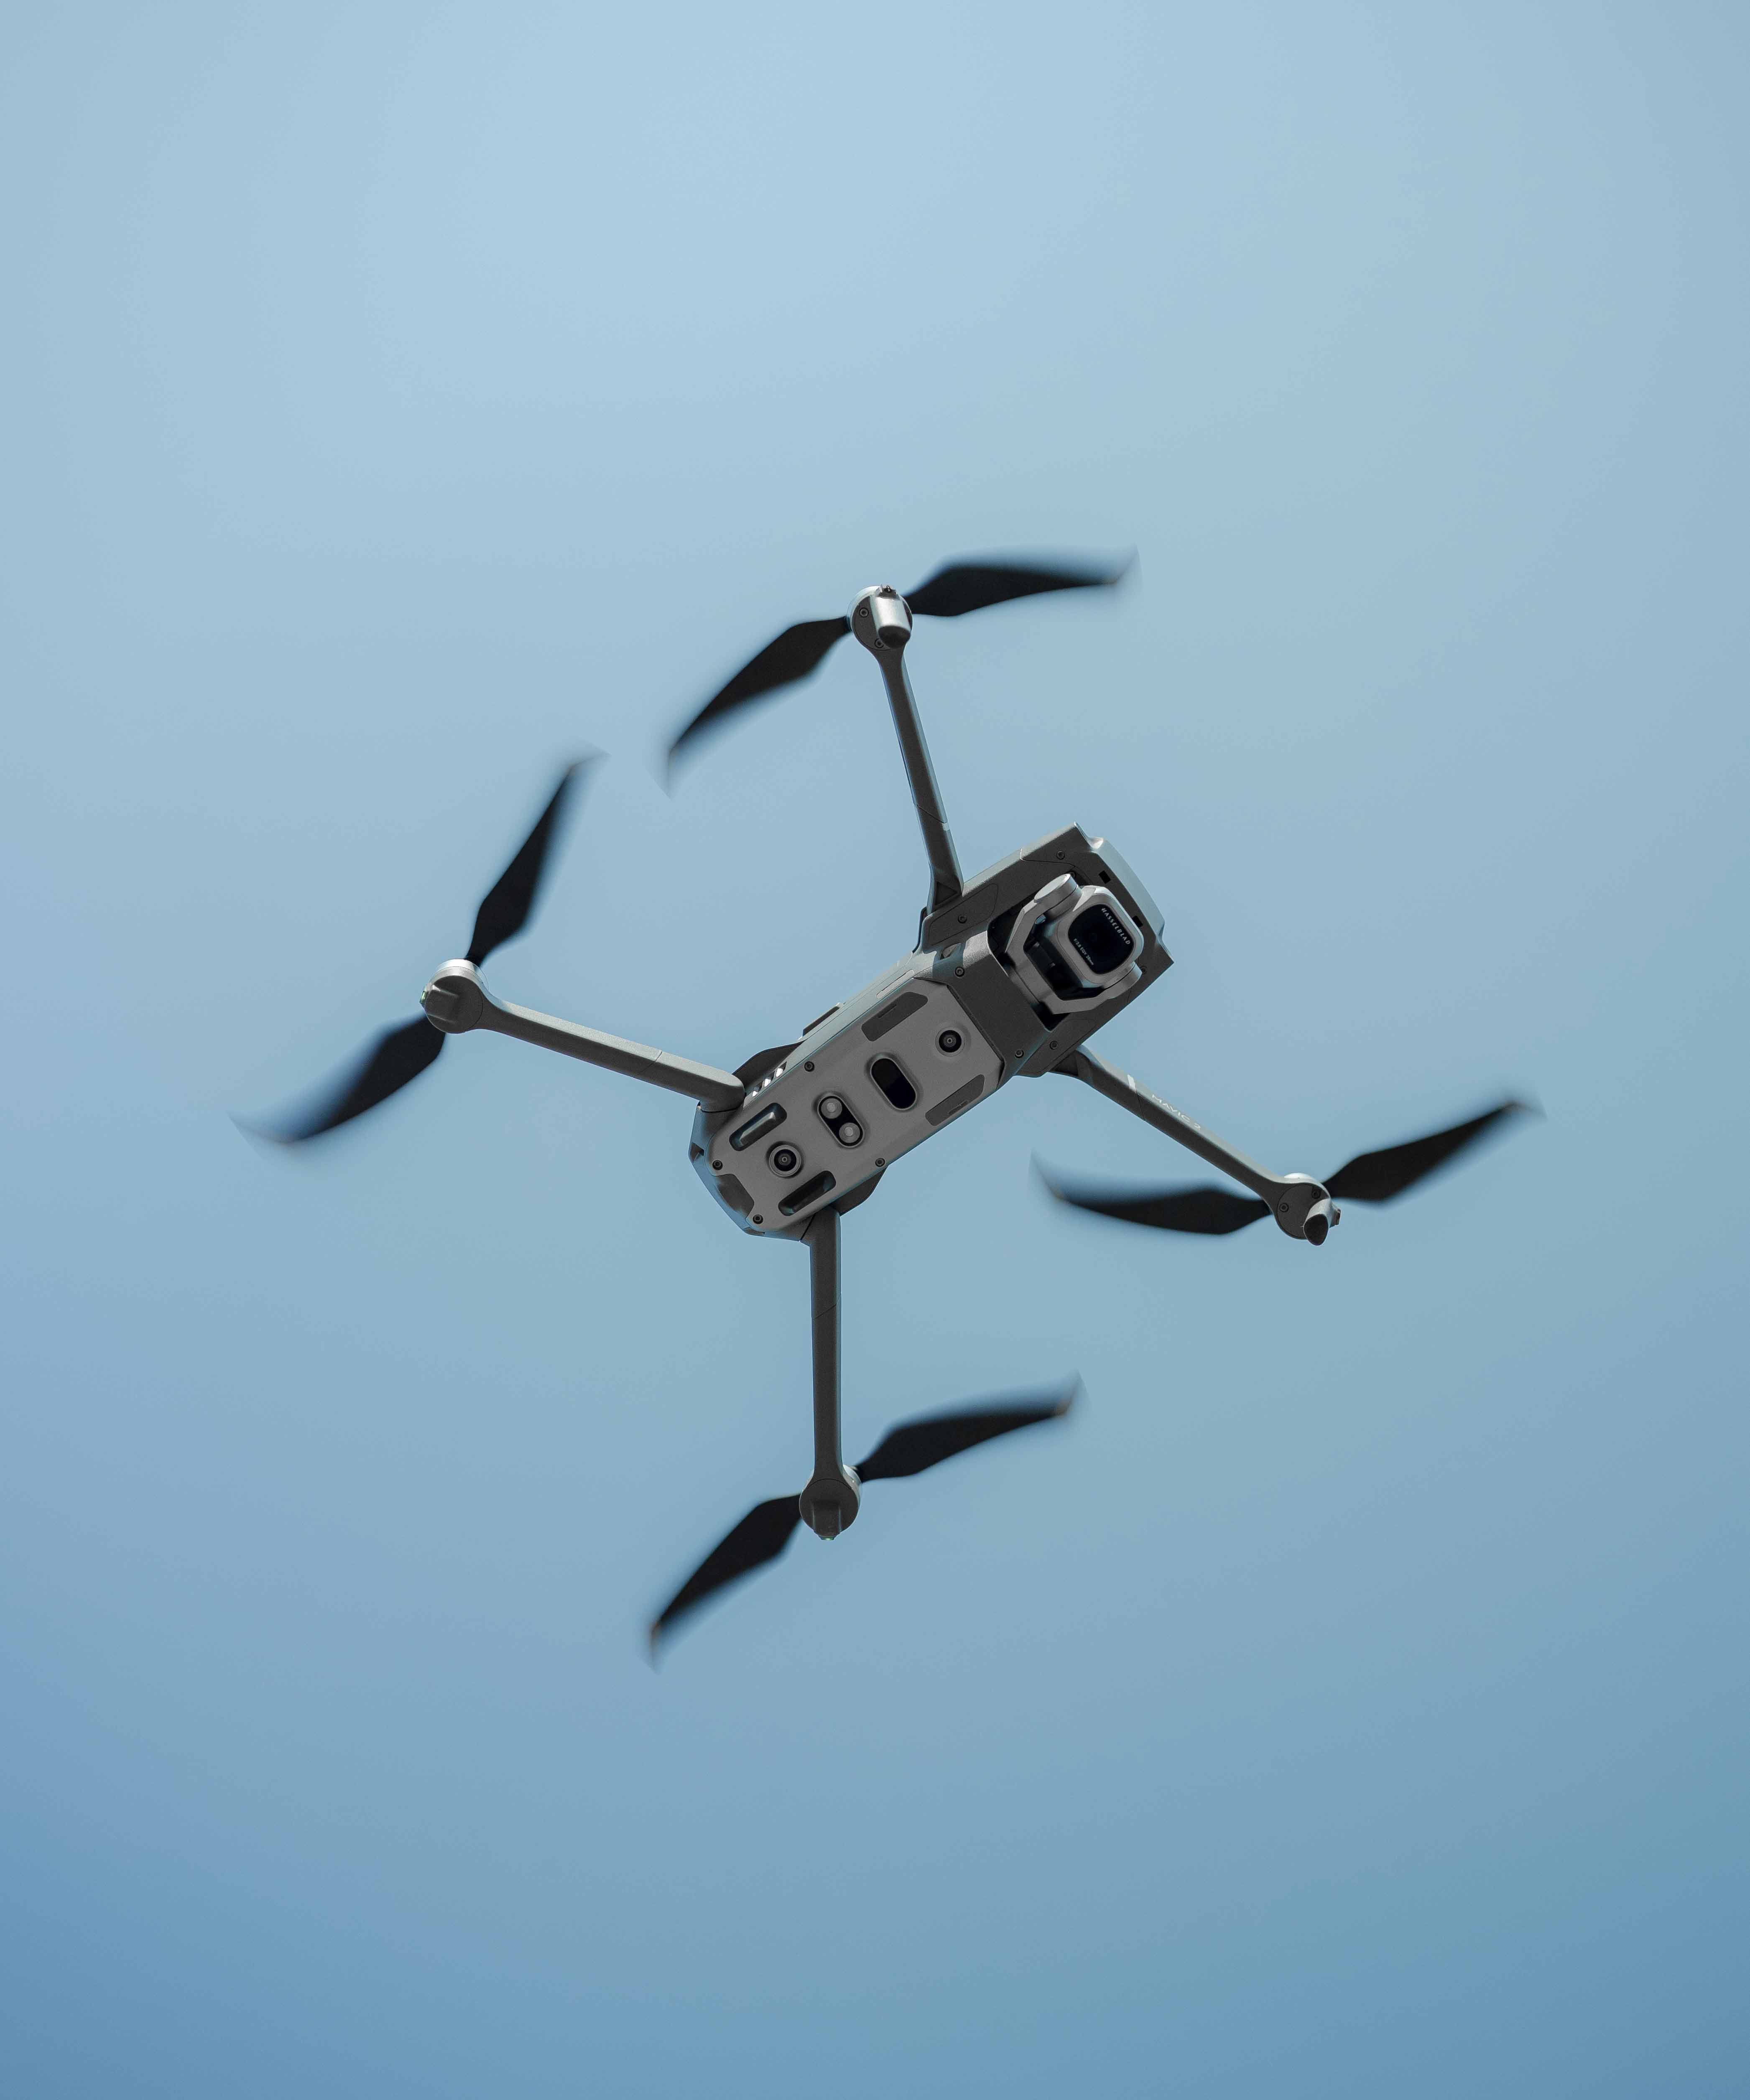 Droneforsikring regler droneflyvning | GF